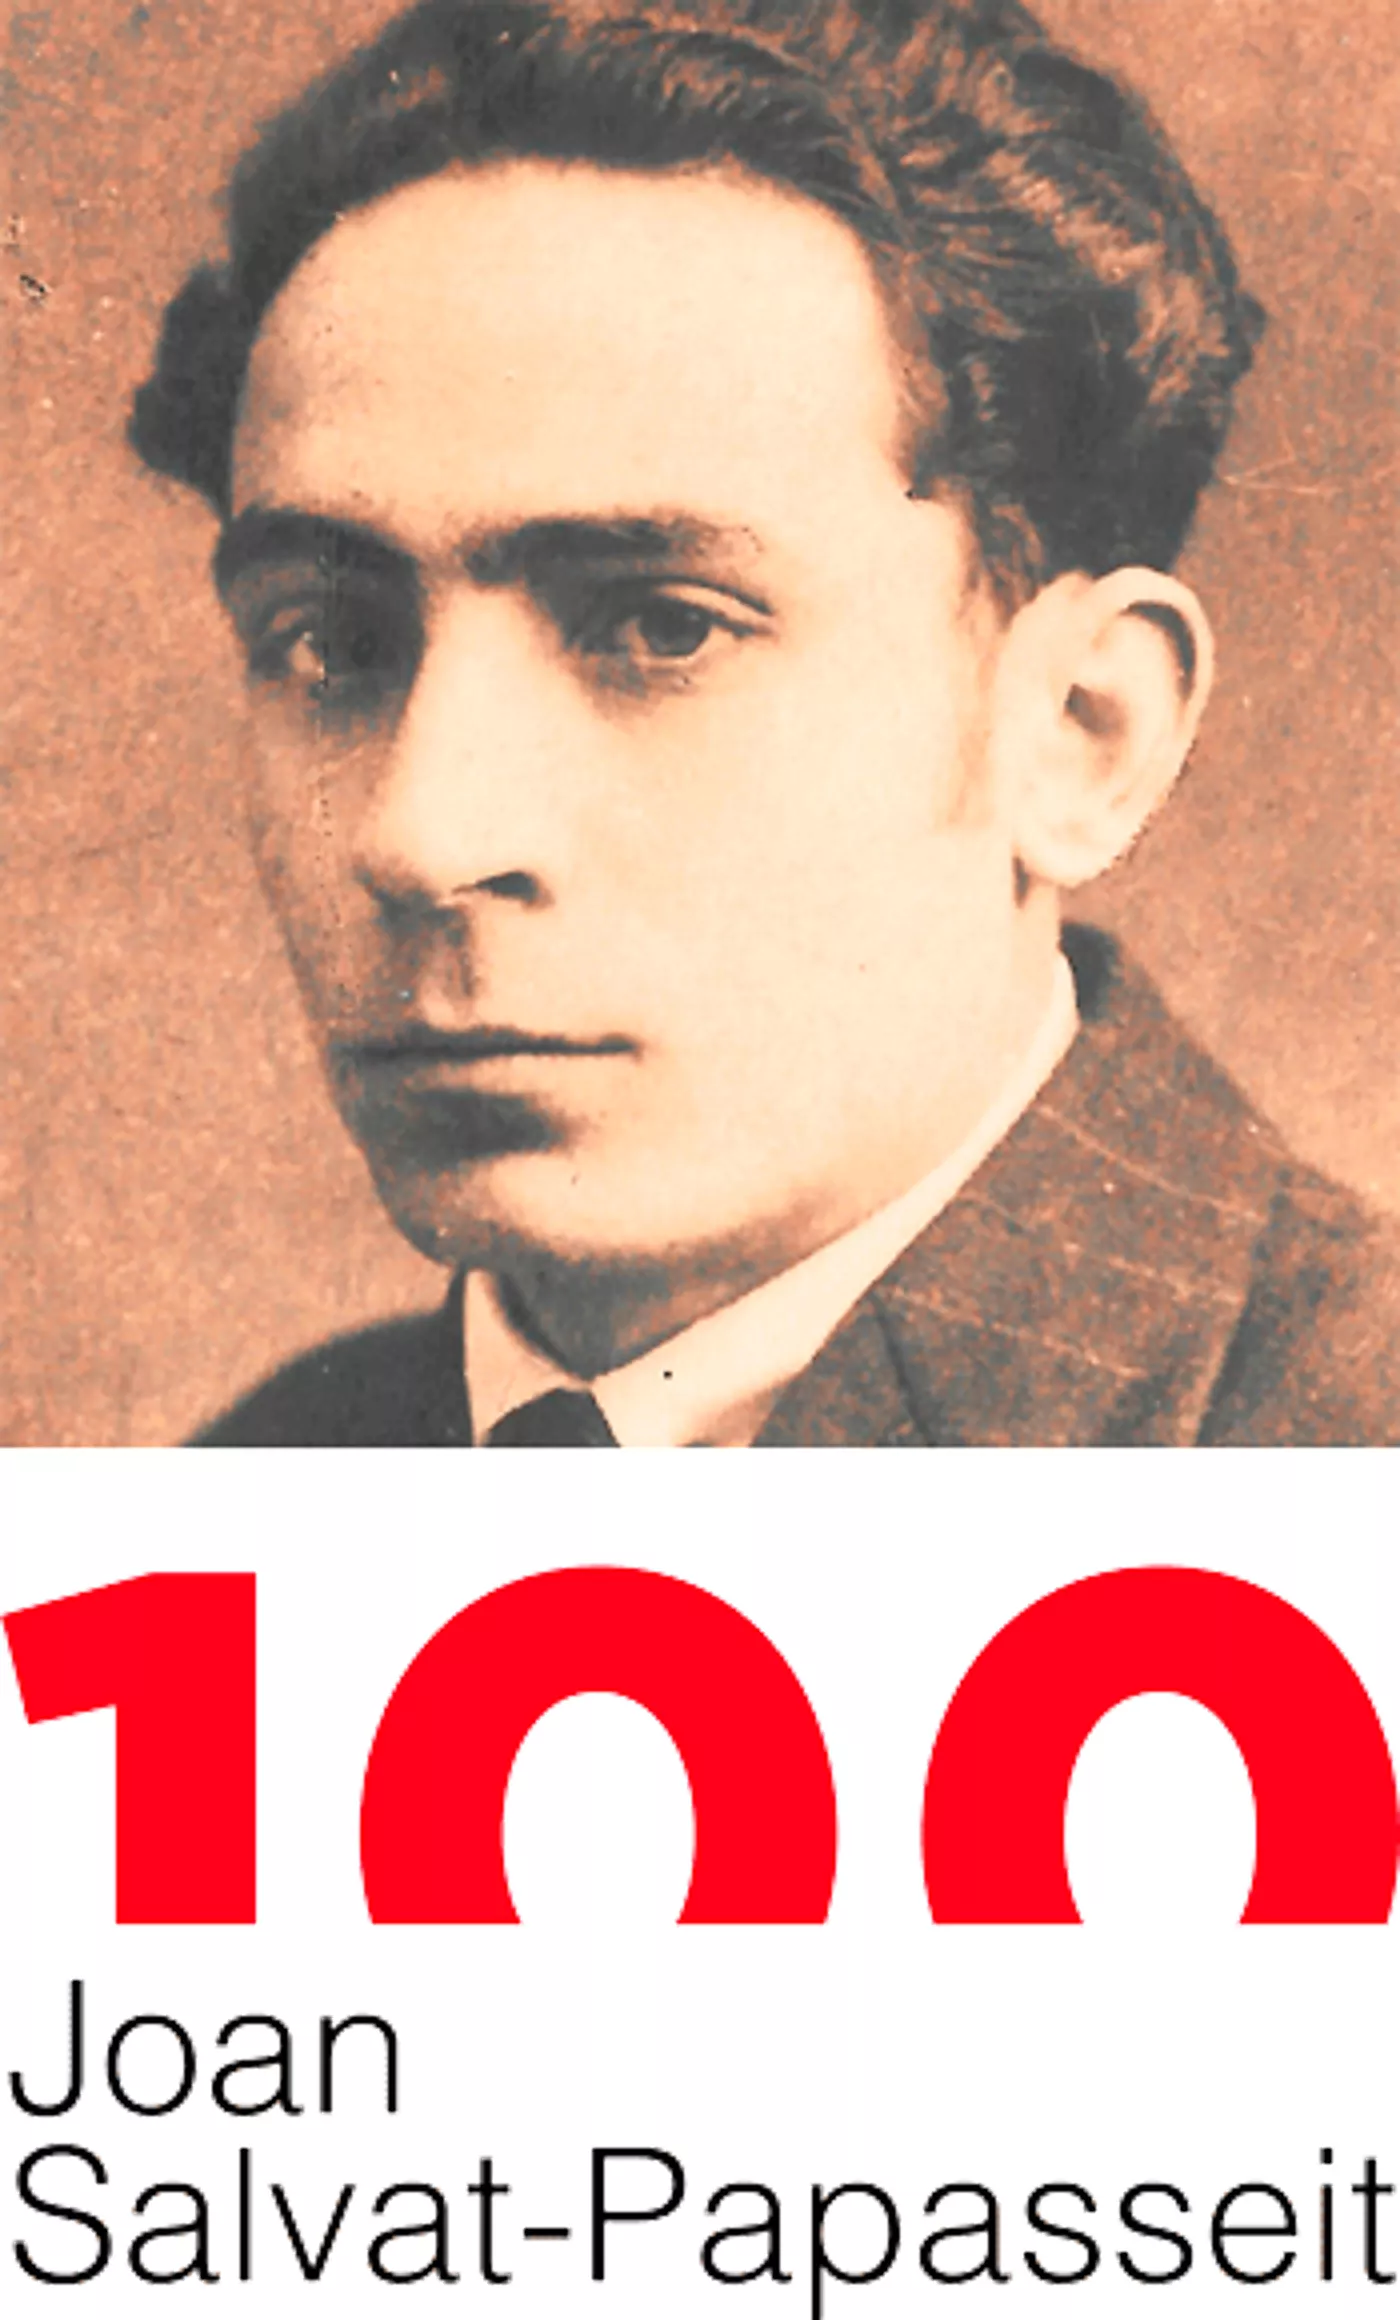 Imatge institucional de la commemoració dels 100 anys de la mort de Joan Salvat-Papasseit